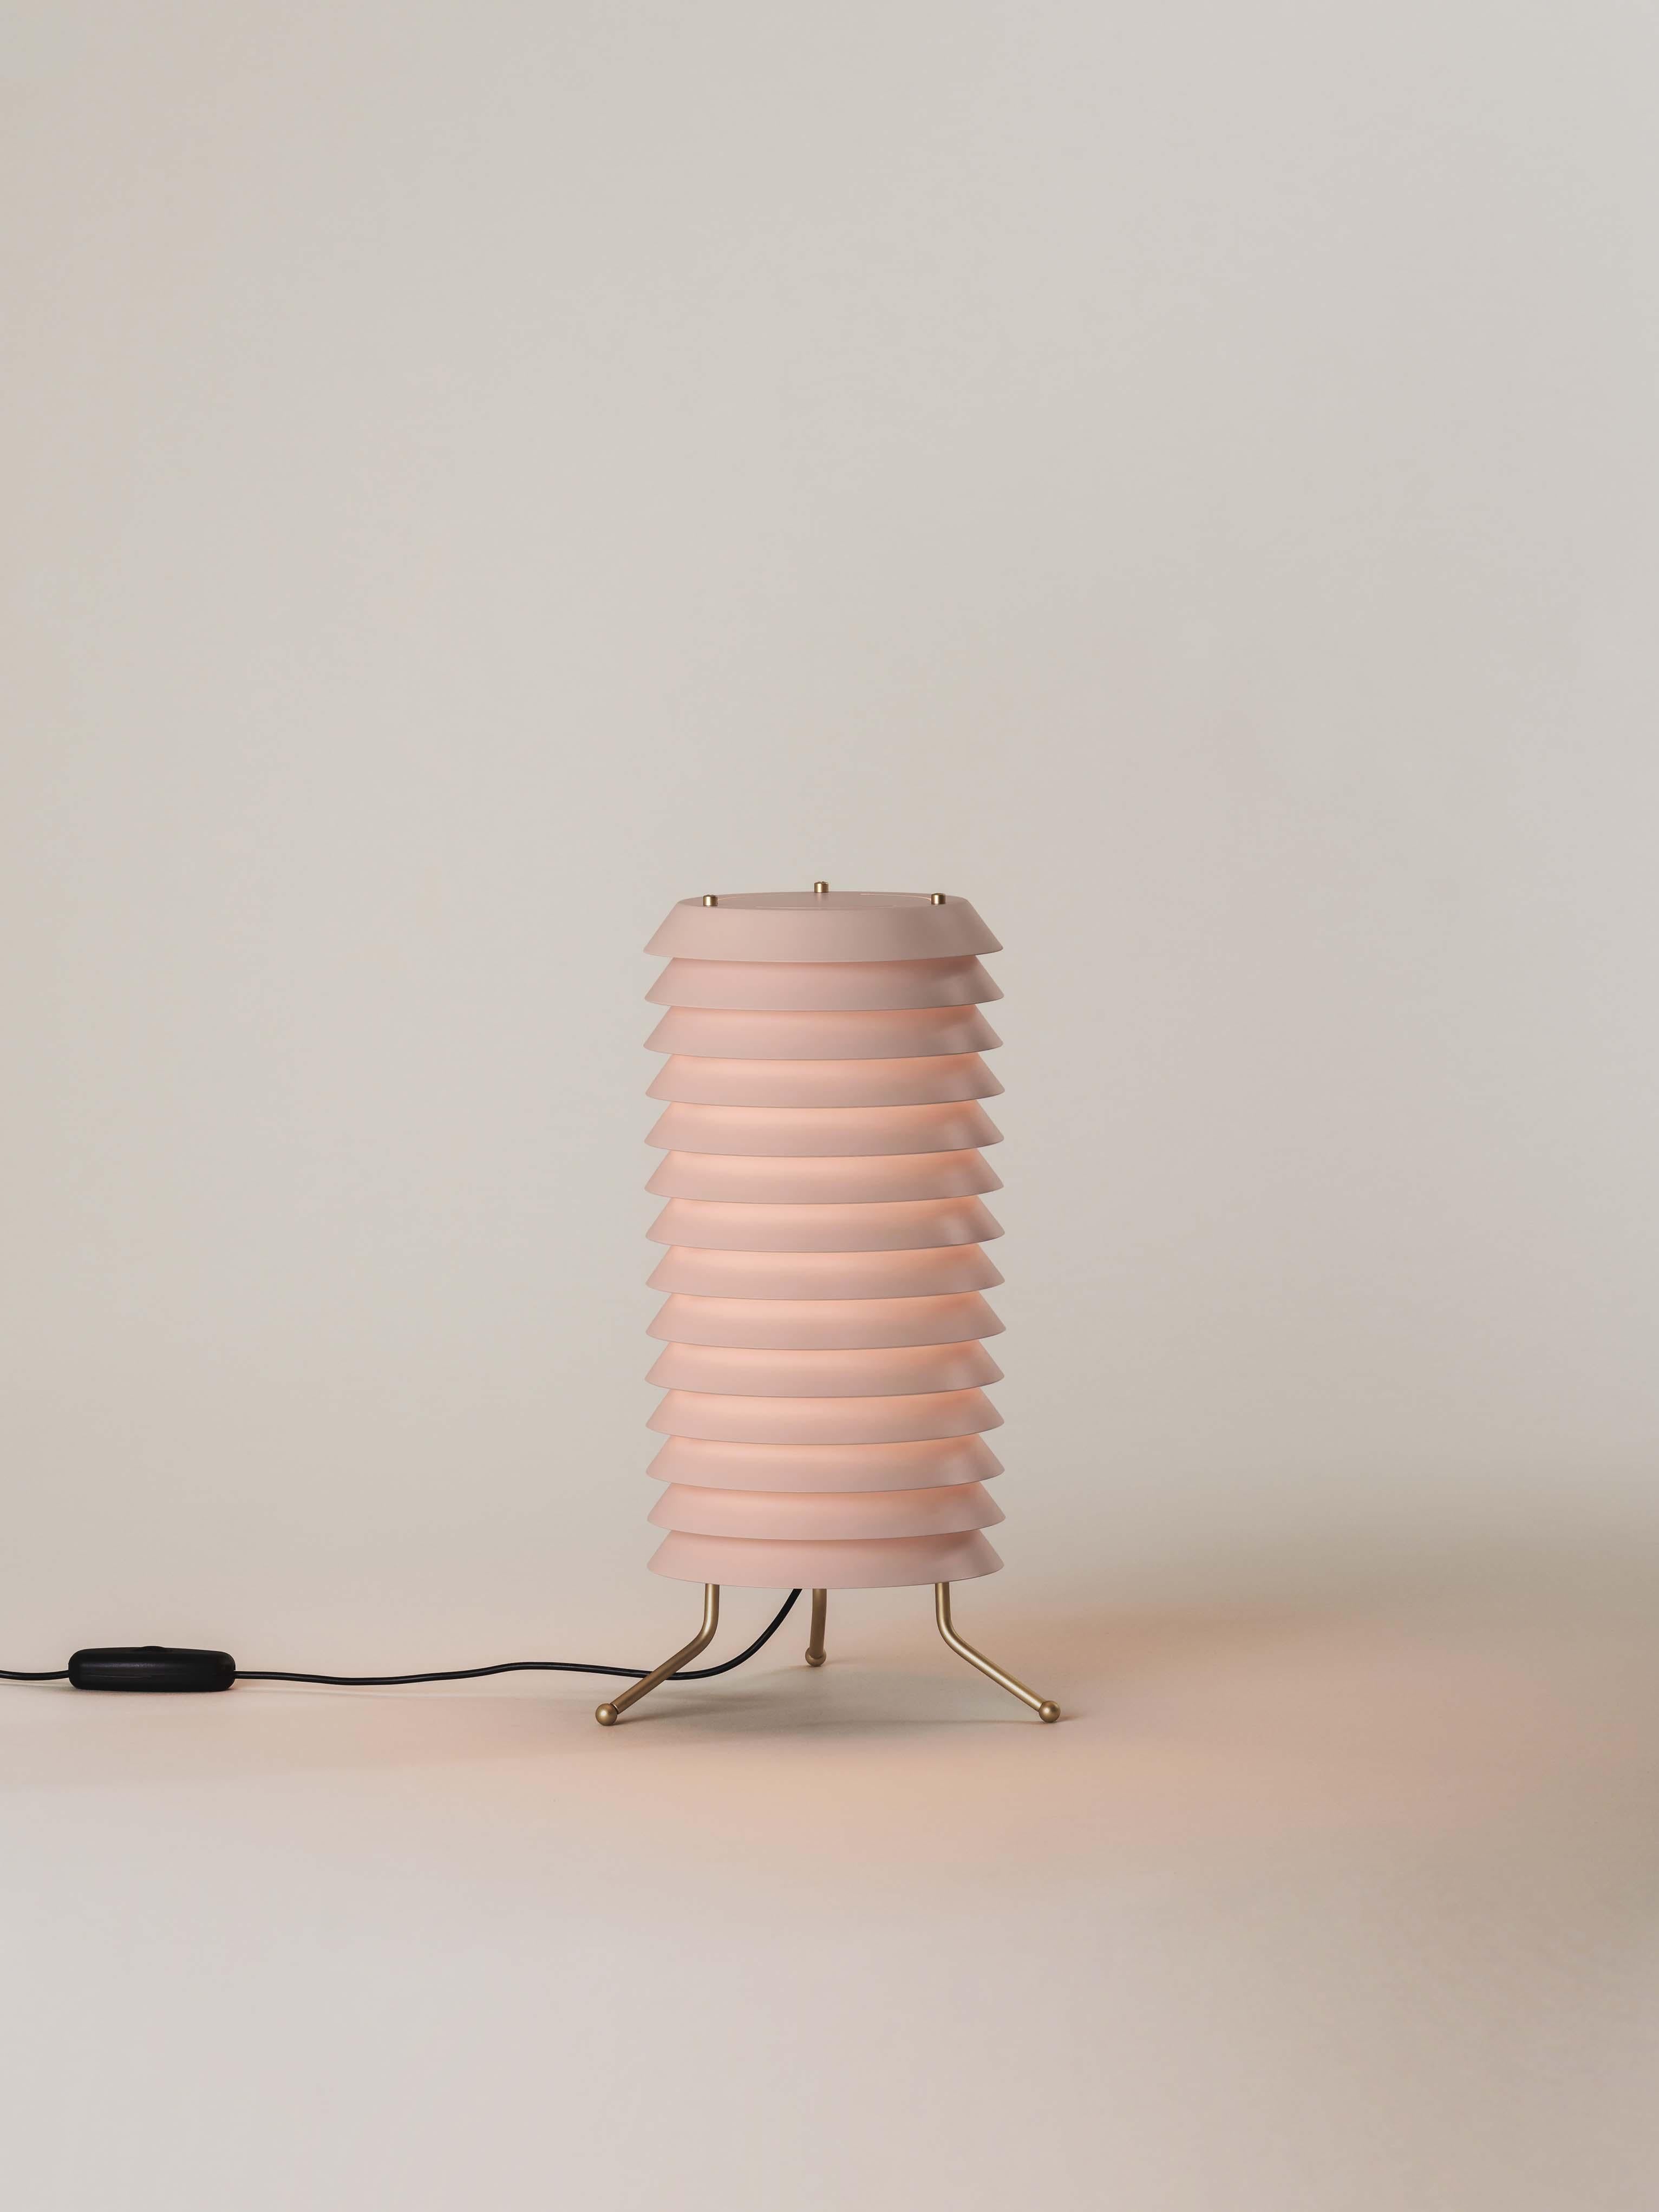 Lampe de table Rose Maija d'Ilmari Tapiovaara
Dimensions : D 18 x H 33 cm
Matériaux : Laiton, plastique.
Disponible en blanc ou en rose nude.

Maija transmet la sensation de lumière typique des villes baltes, où les rues sont à peine éclairées, à